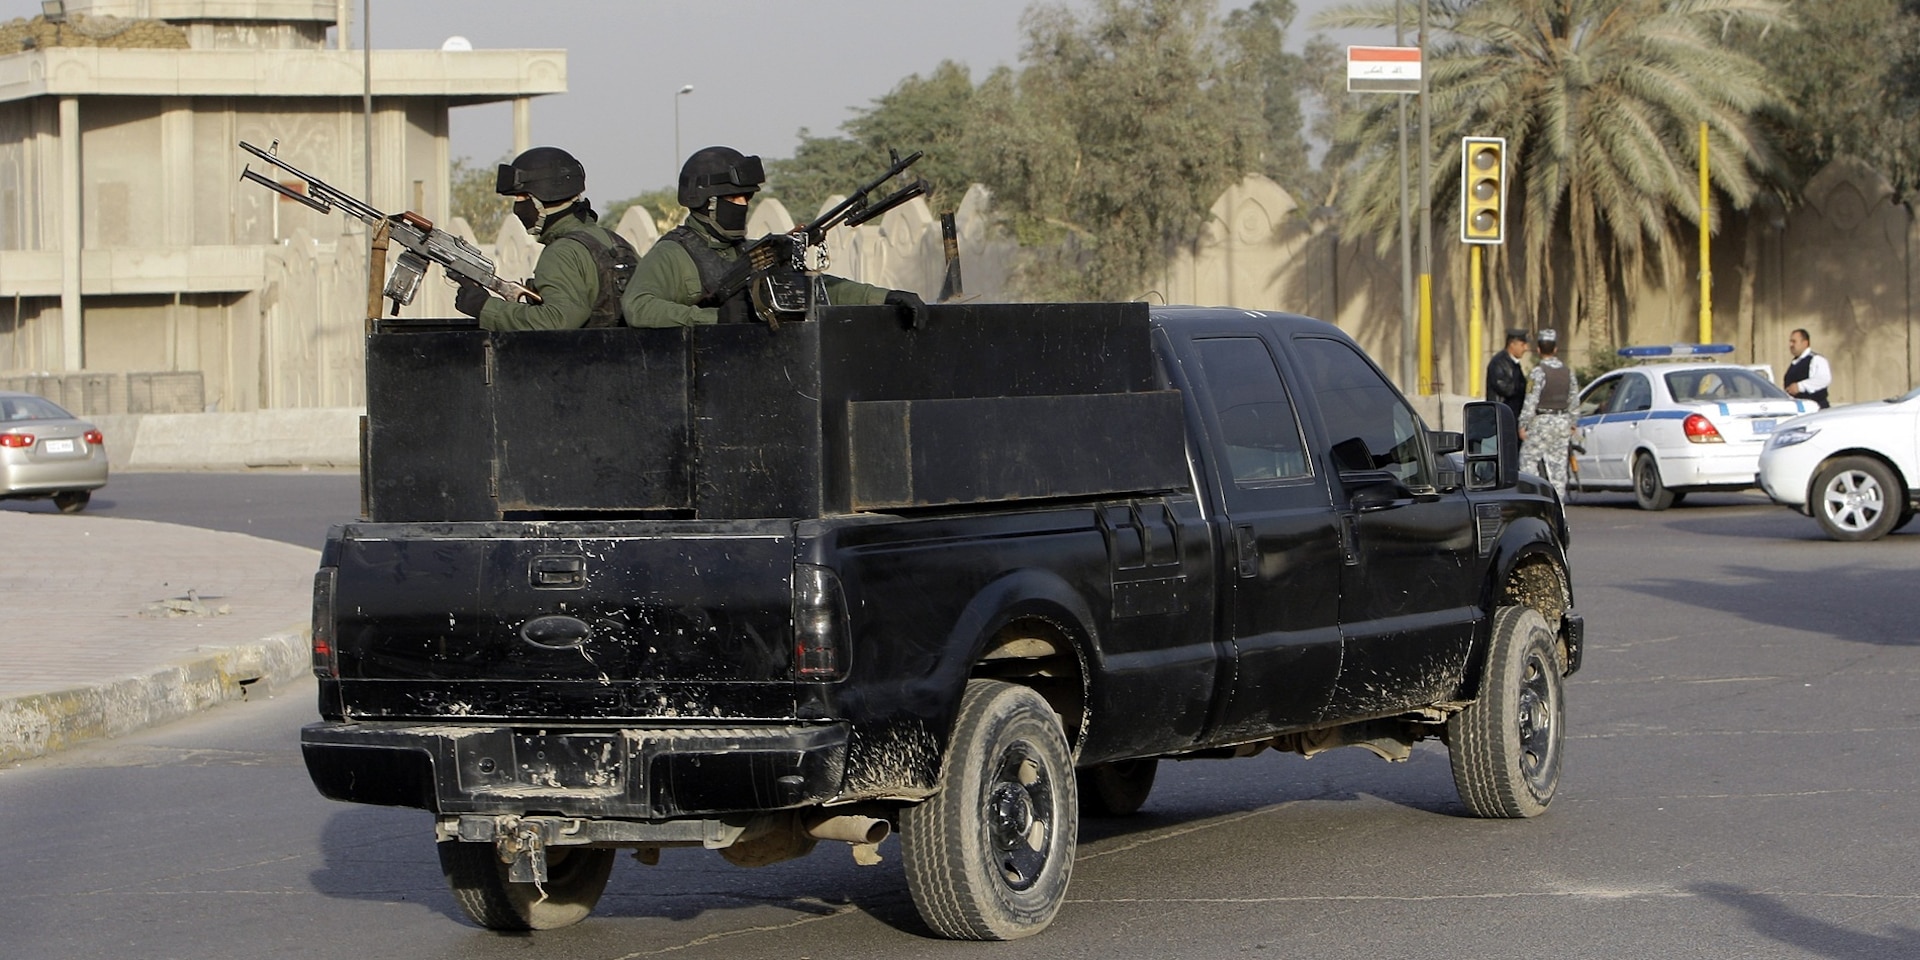 Zwei vermummte Soldaten einer privaten Sicherheitsfirma, stehen bis an die Zähne bewaffnet auf der Ladefläche eines schwarzen Pick-Up-Trucks.